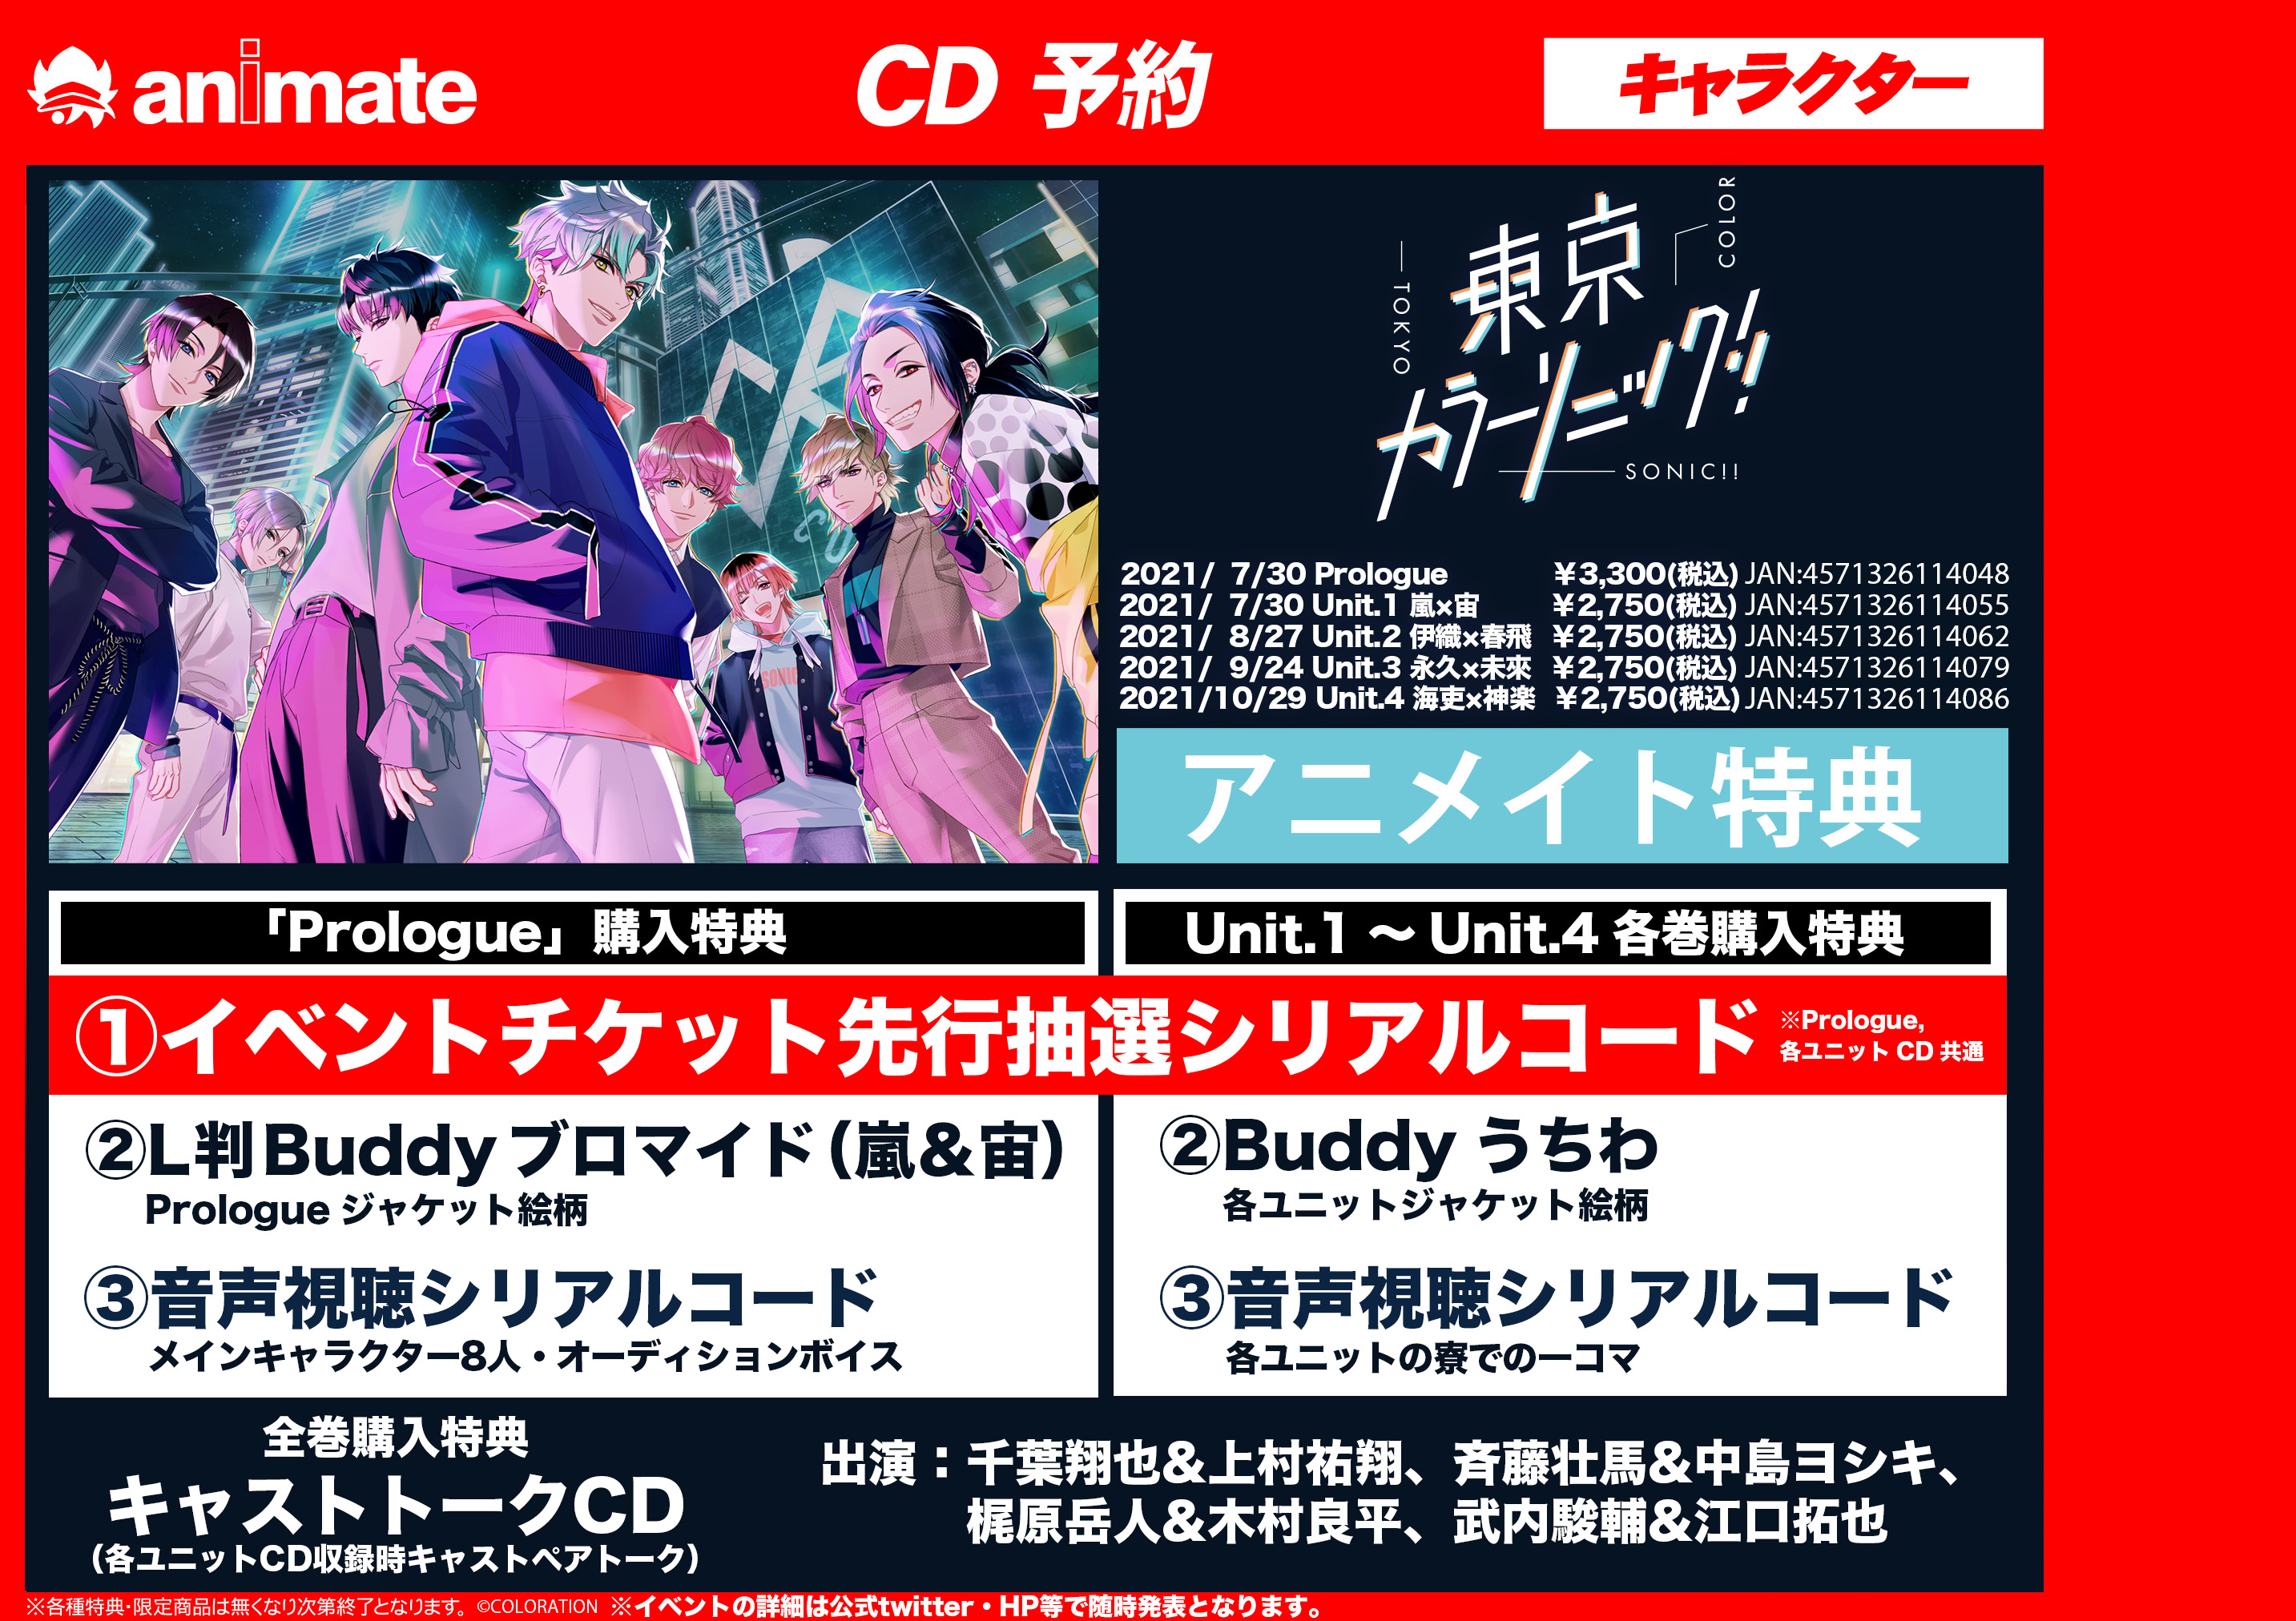 東京カラーソニック 関連cd予約受付中 アニメイト大宮